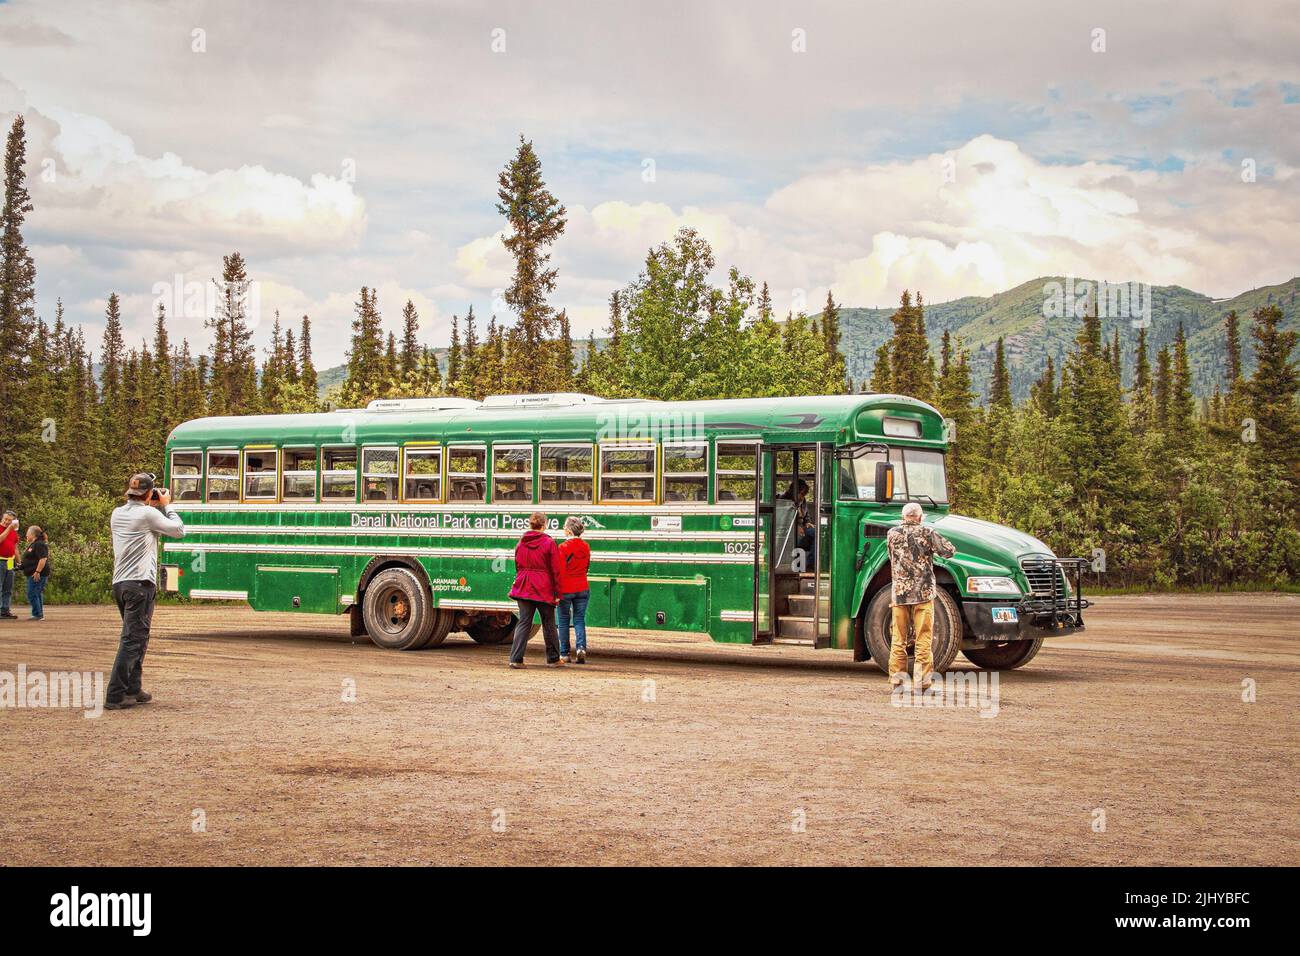 06-22-2002 Denali Alaska USA - Grüner Transitbus im Denali Nationalpark mit Touristen - einer fotografiert - und immergrünen Bäumen und Bergen in b Stockfoto